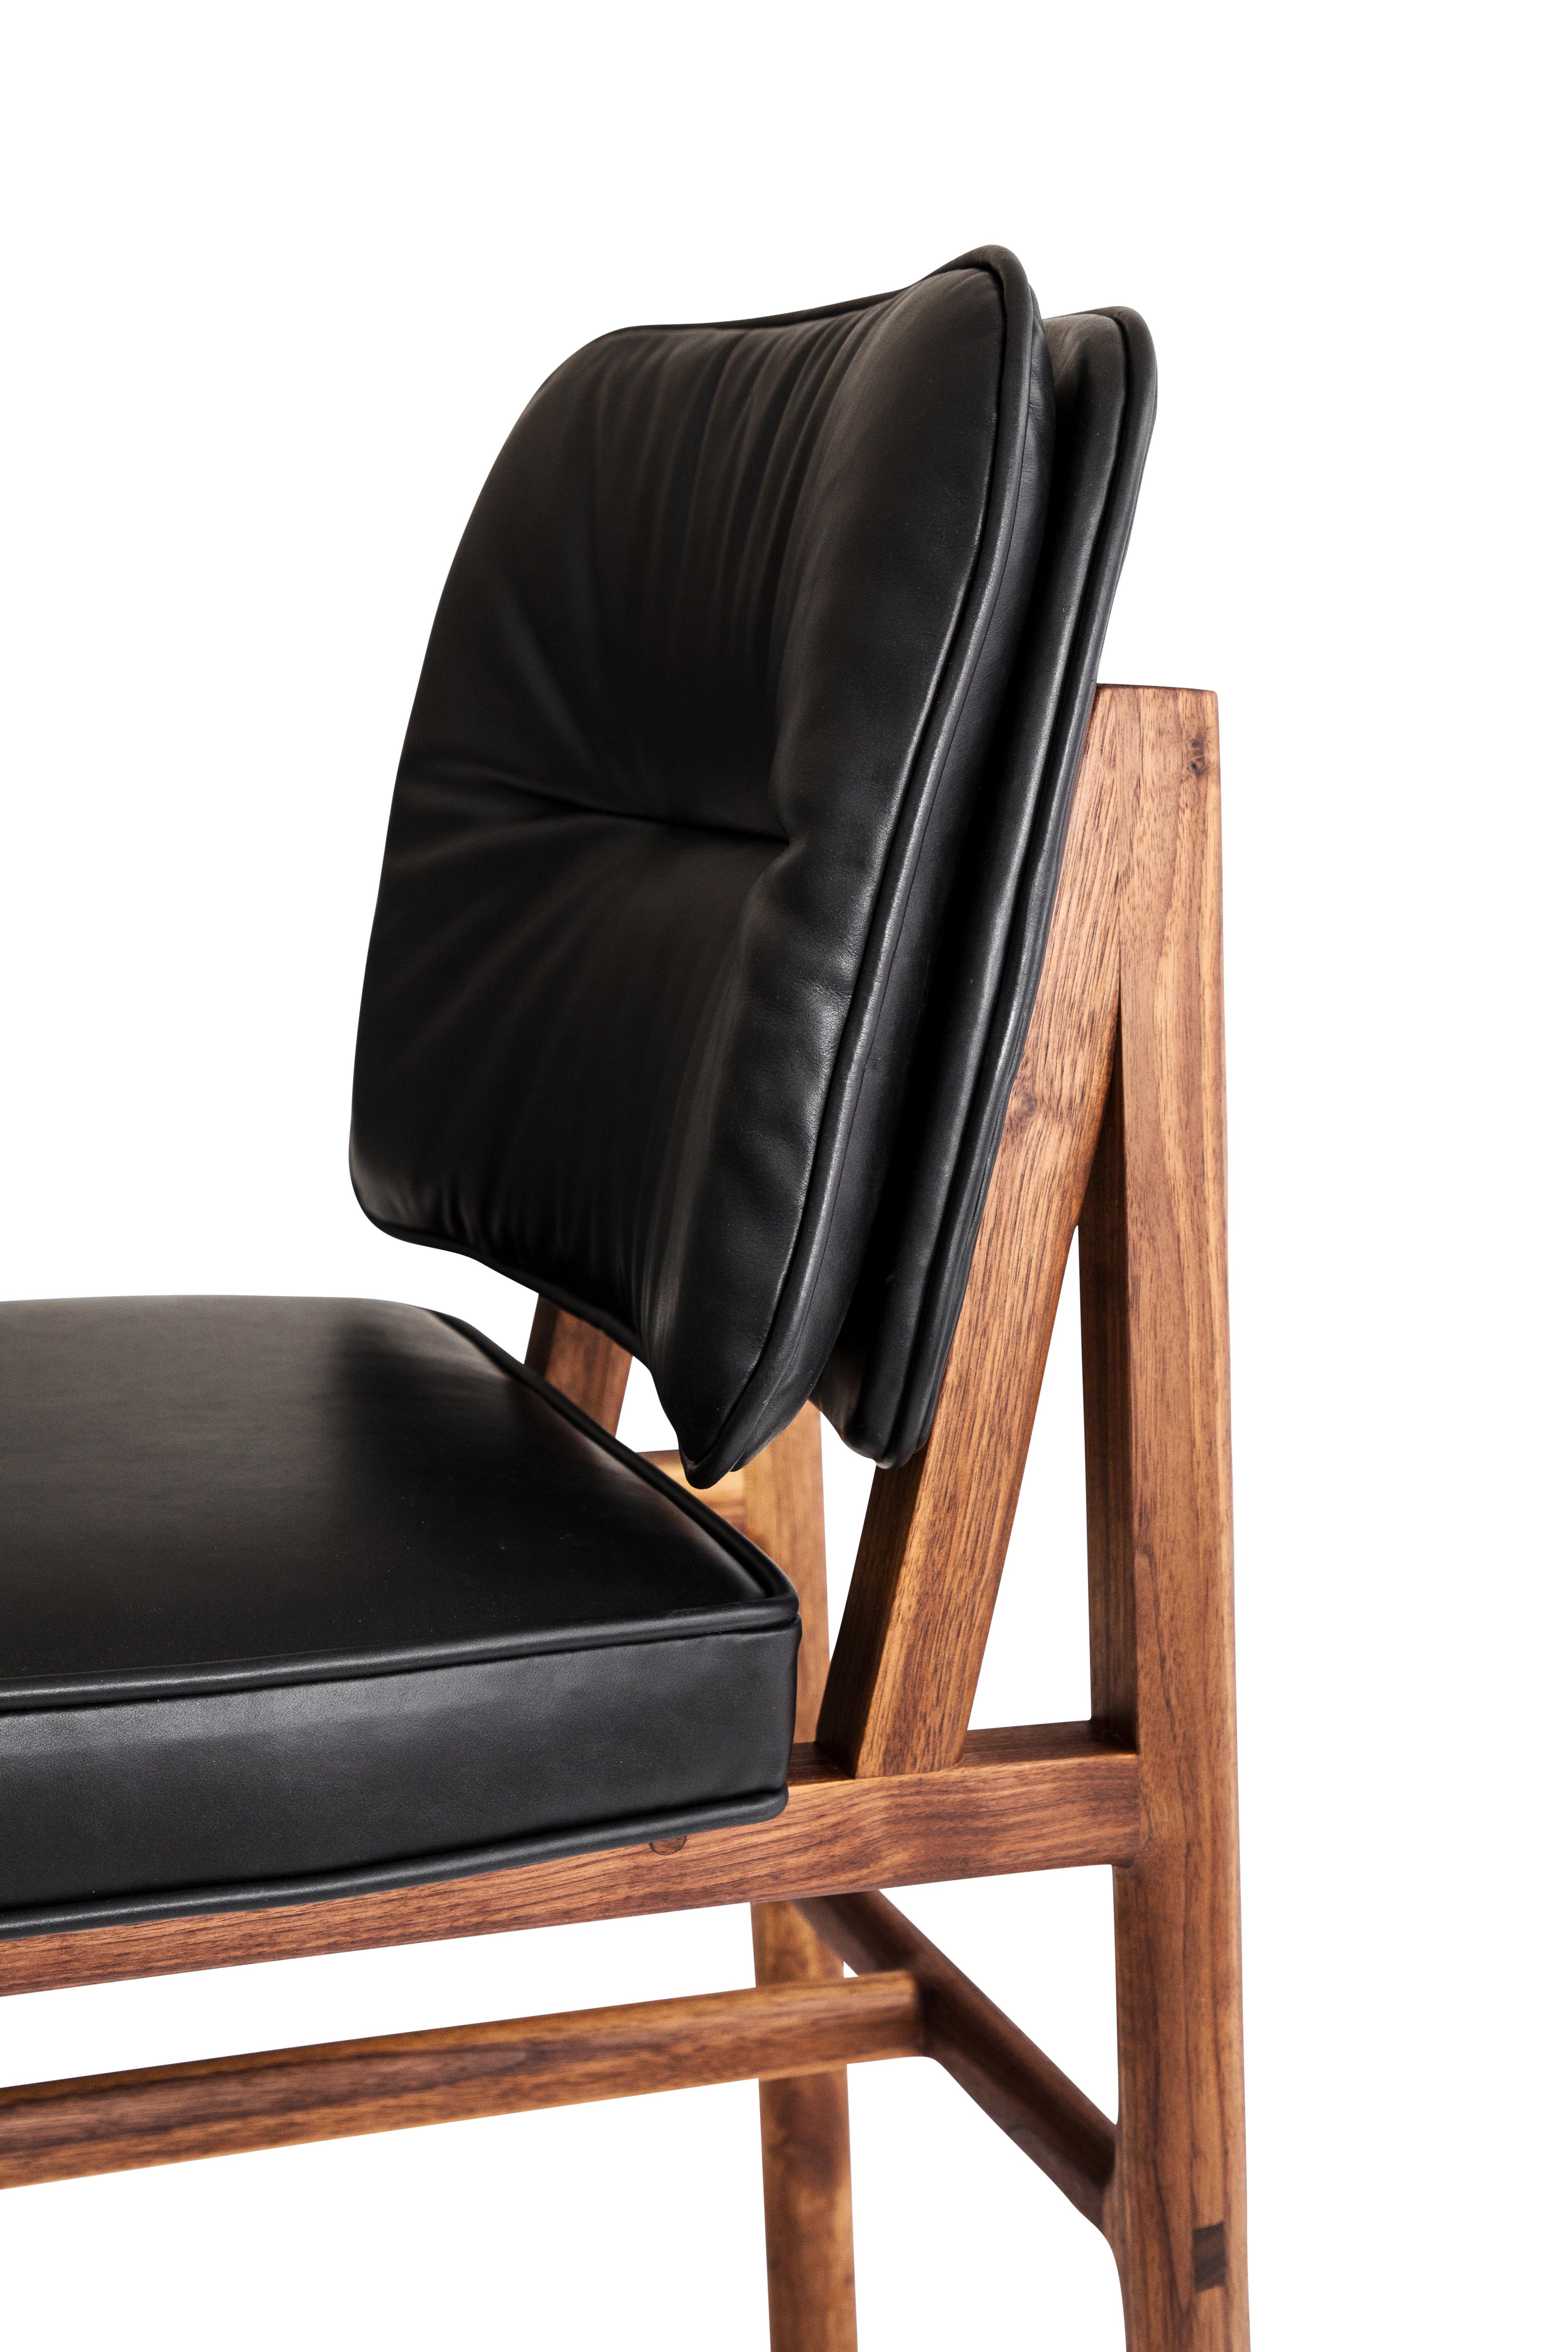 Massivholzkonstruktion mit handgeschnittenen Tischlerarbeiten und individuell gepolstertem Sitz und Rückenlehne. Dieser Stuhl ist in Nussbaum und schwarzem Leder gehalten.

Vorrätige Lederauswahl: schwarz, oliv, camel oder vegtan Leder.
Holzauswahl: